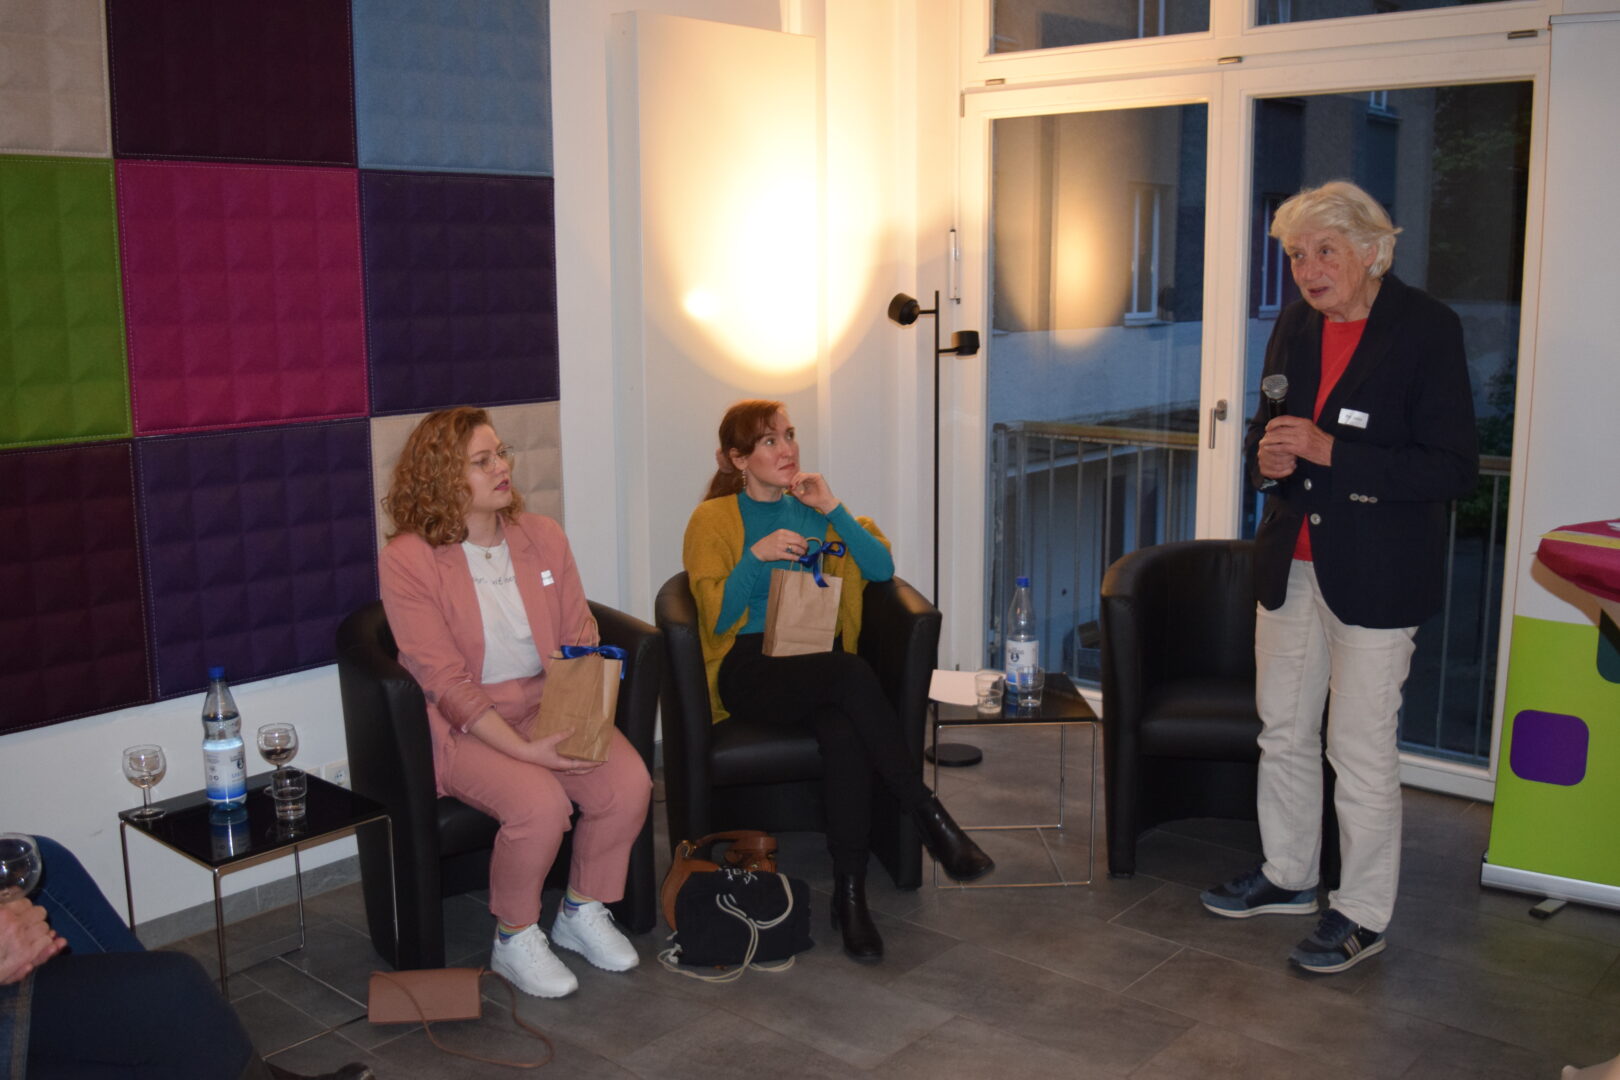 Im Foyer des Hauses Helene Weber mit großen Fenstern sitzen die Podiumsgäste Johanna Jungbluth und Nora Bossong auf Ledersesseln. Rechts davon steht die Vorsitzende des KDFB Berlin, Prof. Barbara John, mit Mikrofon in der Hand.